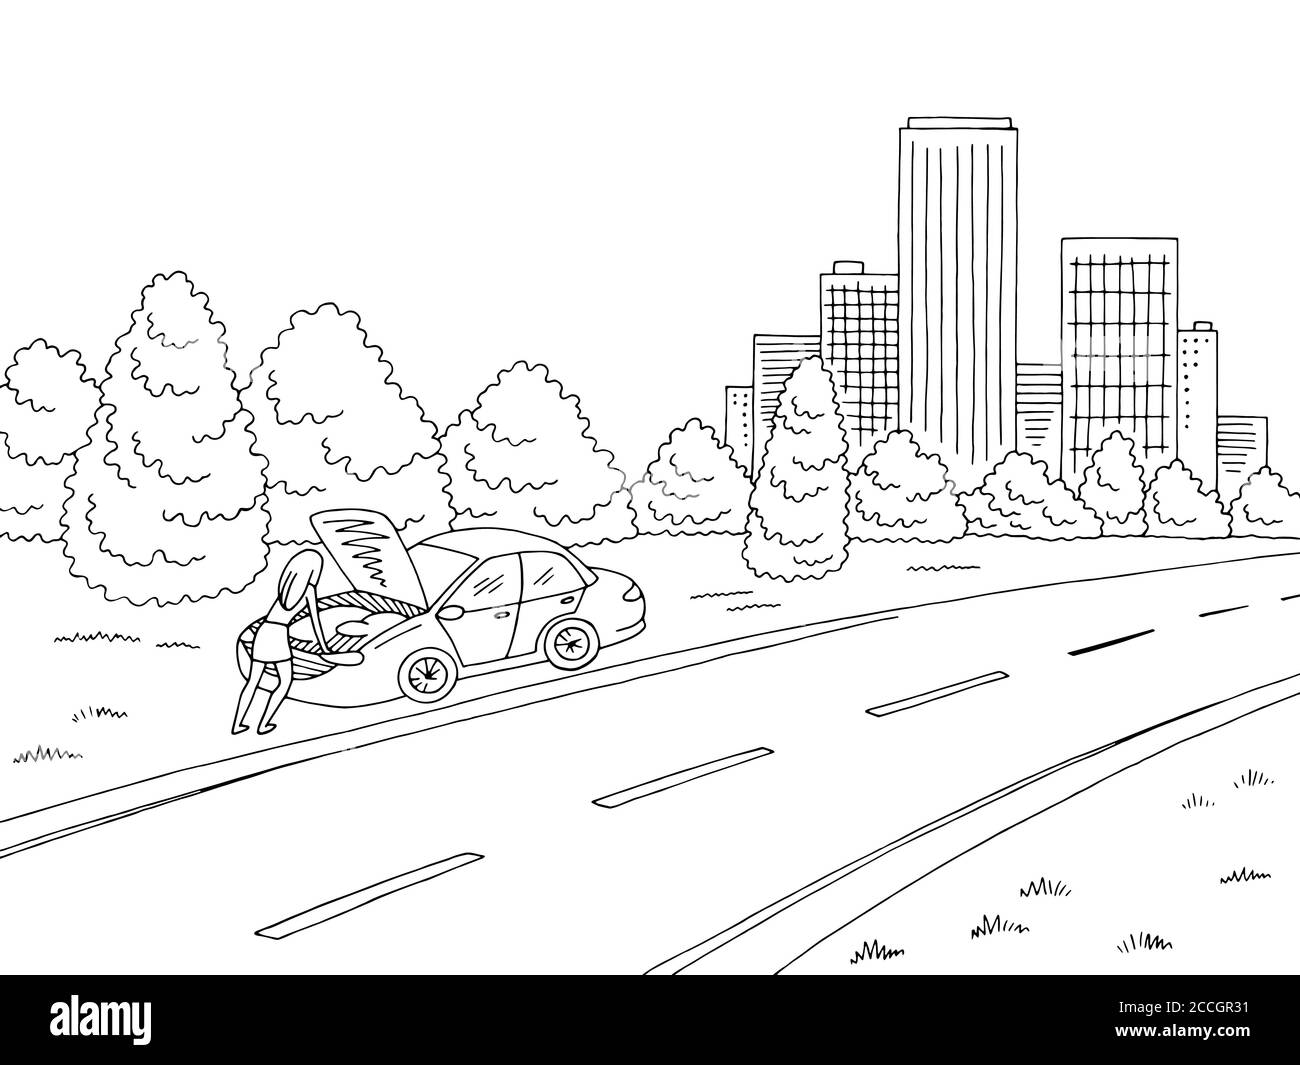 Gebrochene Auto Grafik schwarz weiß Straße Landschaft Stadt Skizze Illustration Vektor. Frau steht Stock Vektor